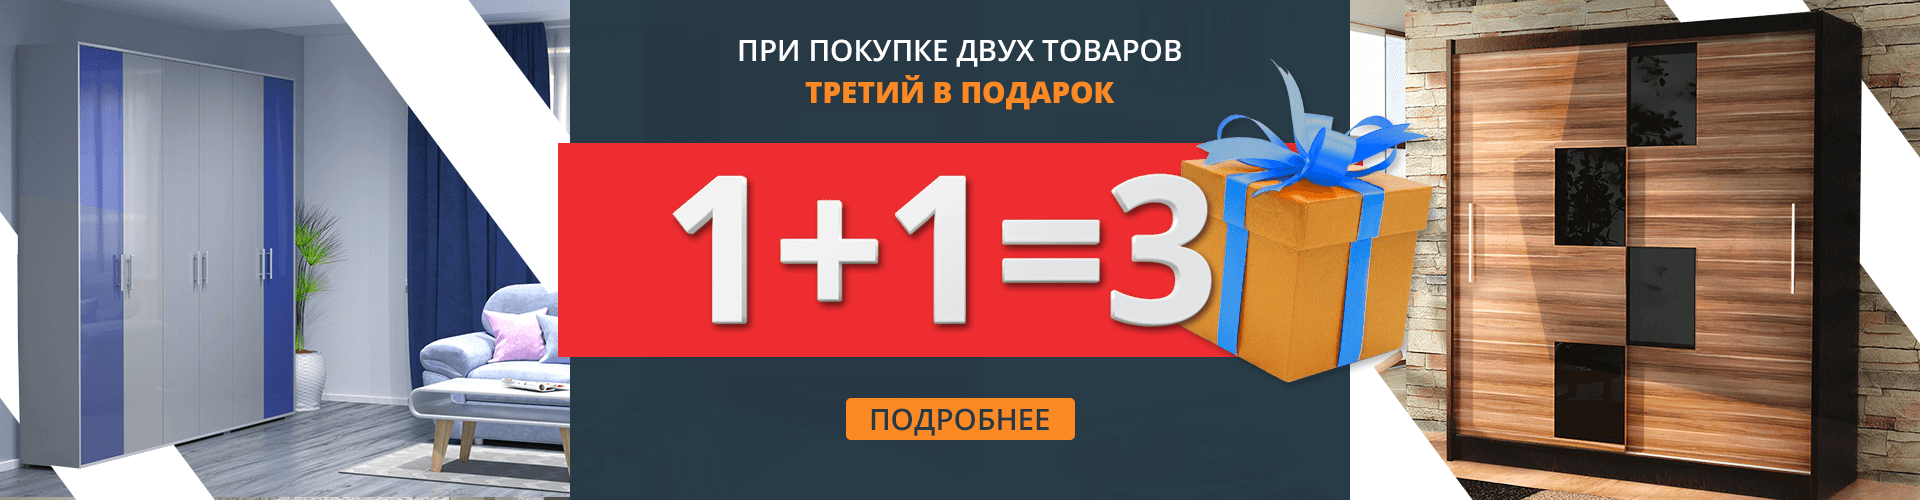 1+1=3